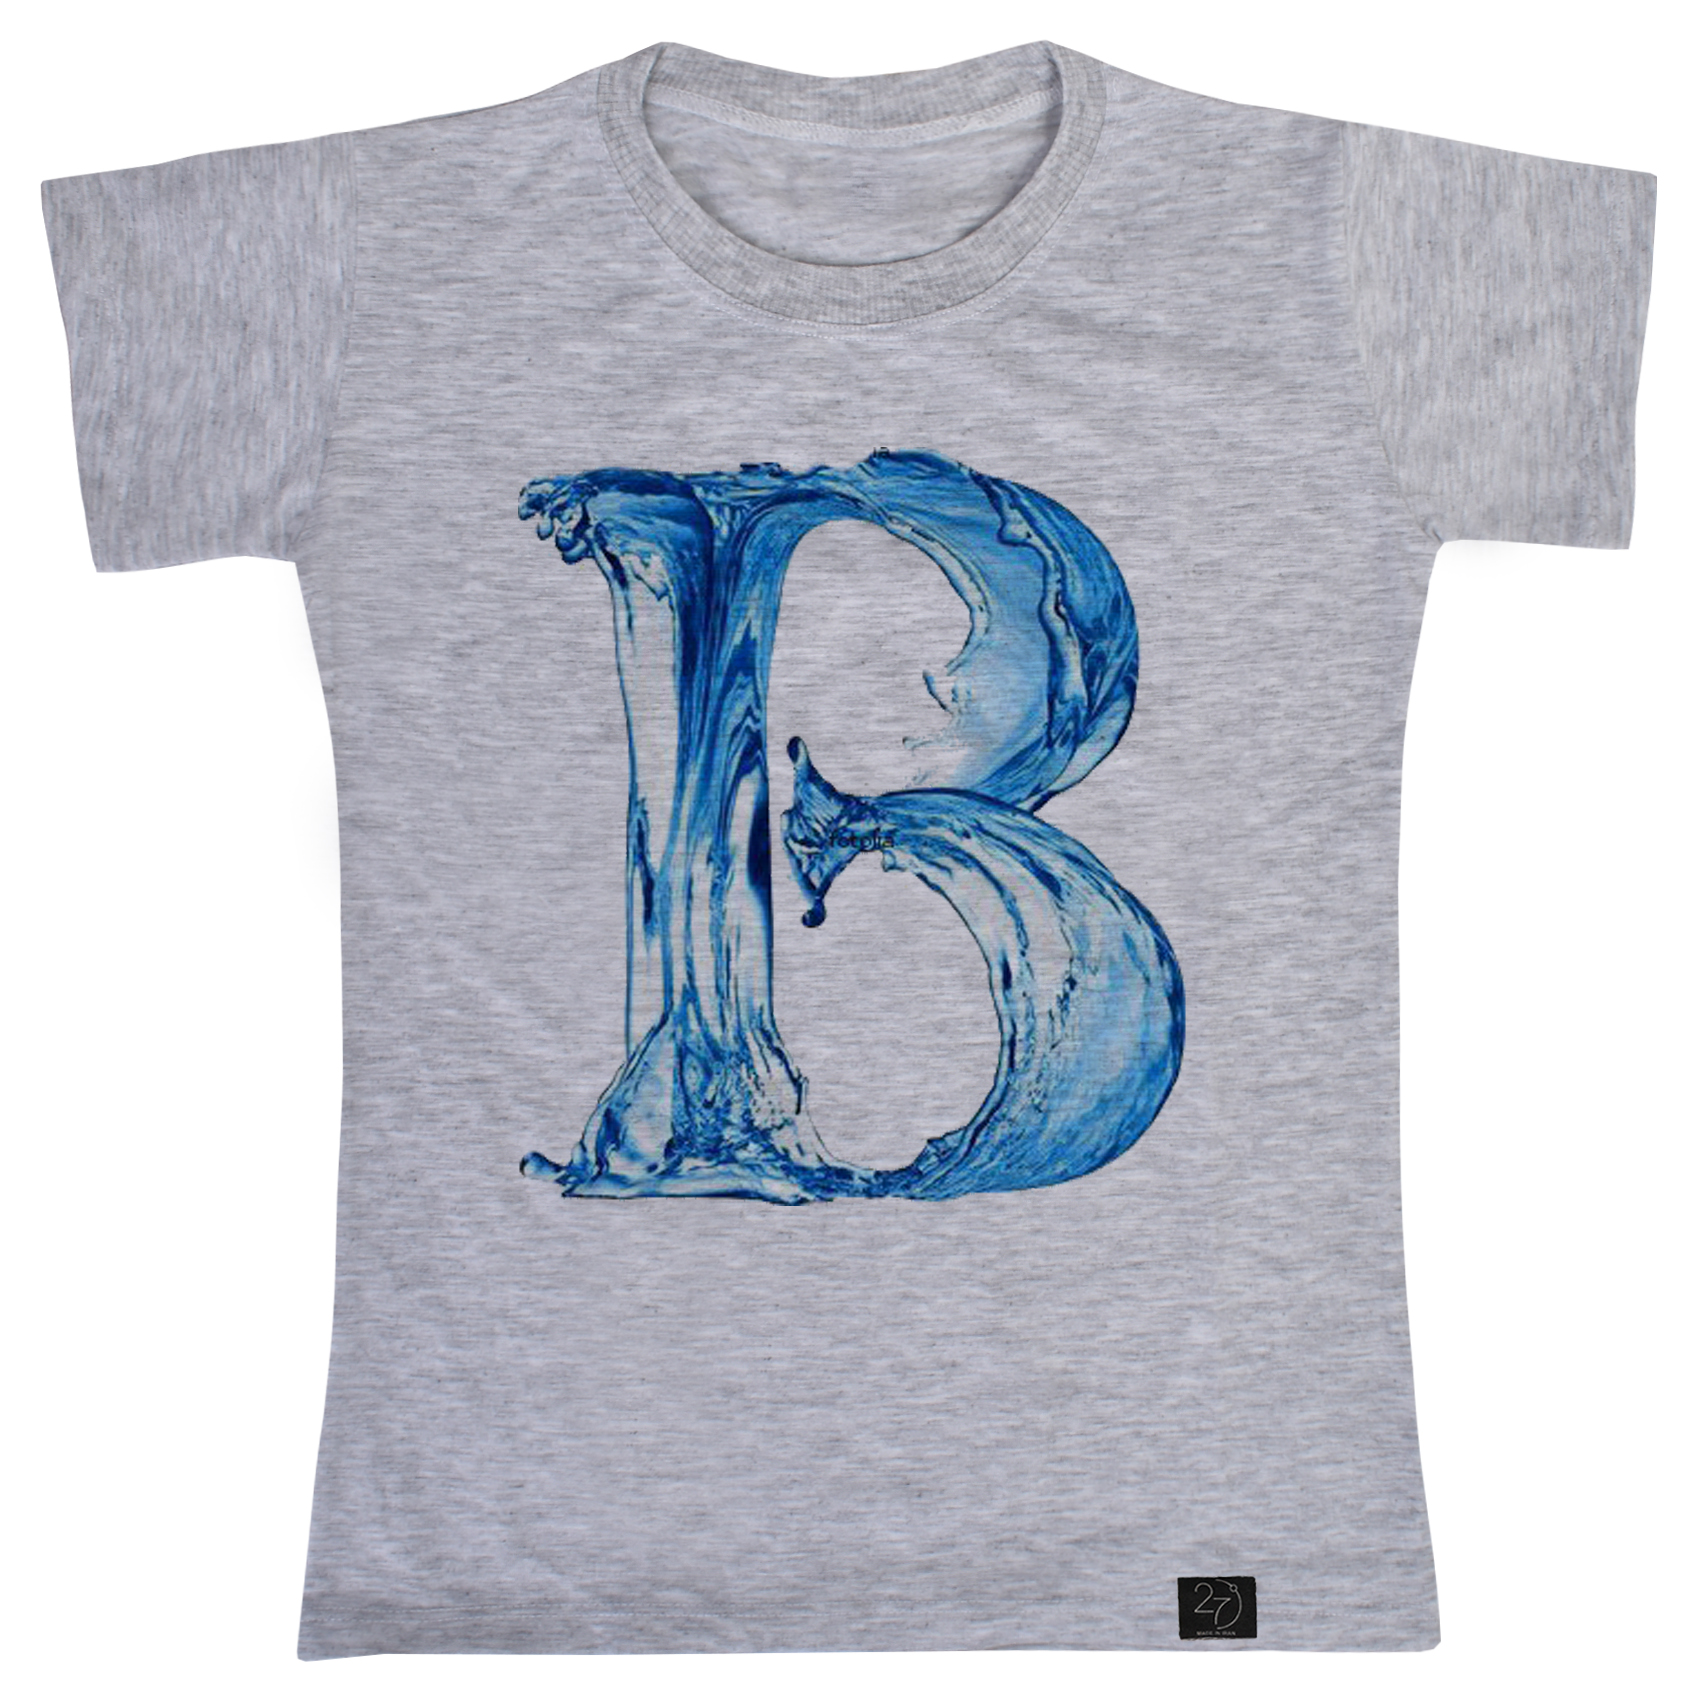 تی شرت پسرانه 27 مدل حرف B کد G49